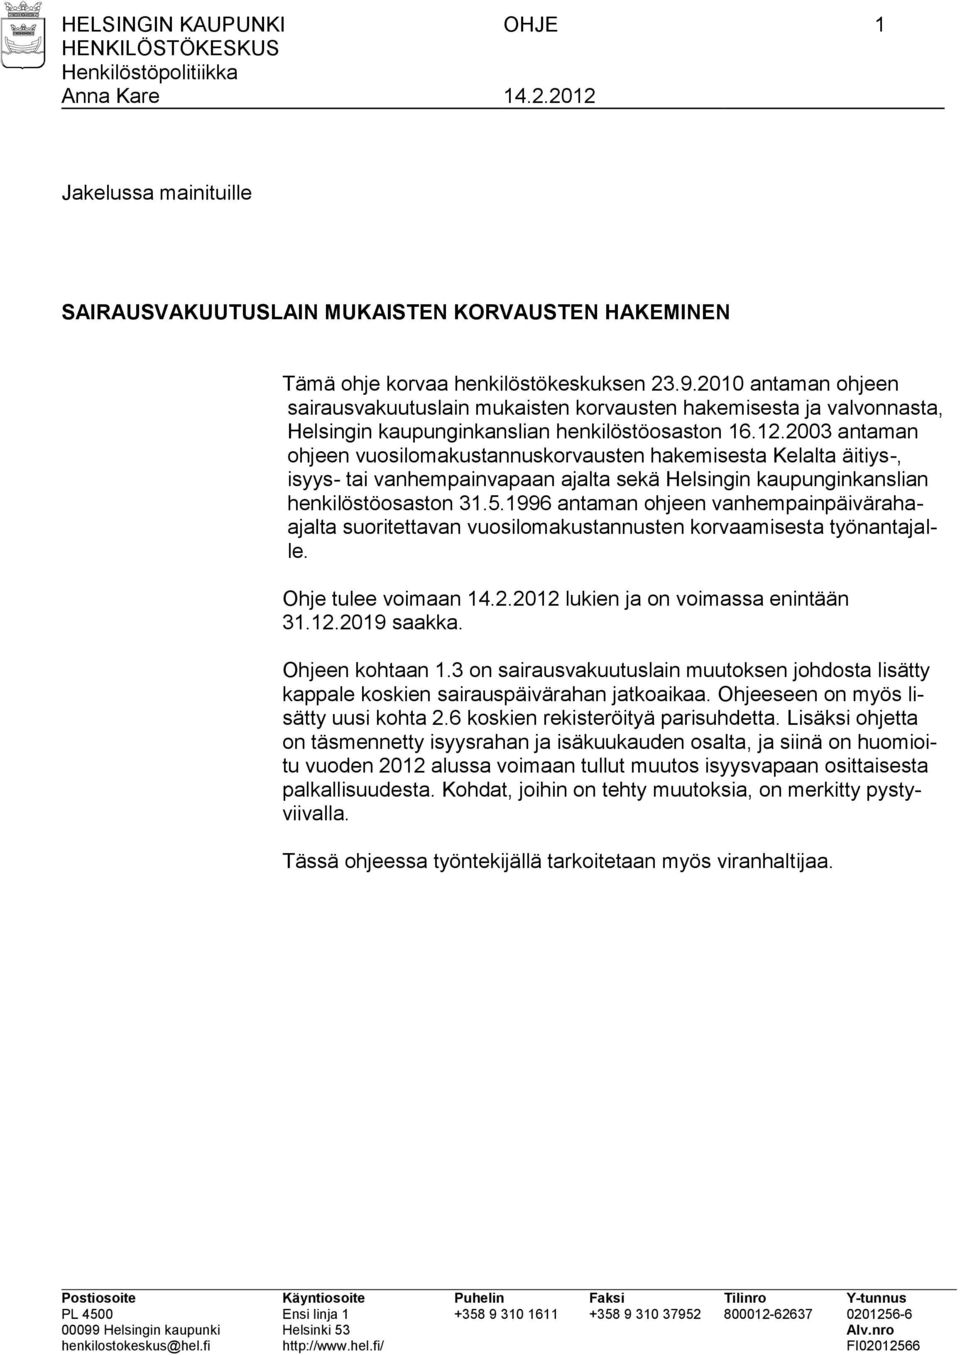 2003 antaman ohjeen vuosilomakustannuskorvausten hakemisesta Kelalta äitiys-, isyys- tai vanhempainvapaan ajalta sekä Helsingin kaupunginkanslian henkilöstöosaston 31.5.